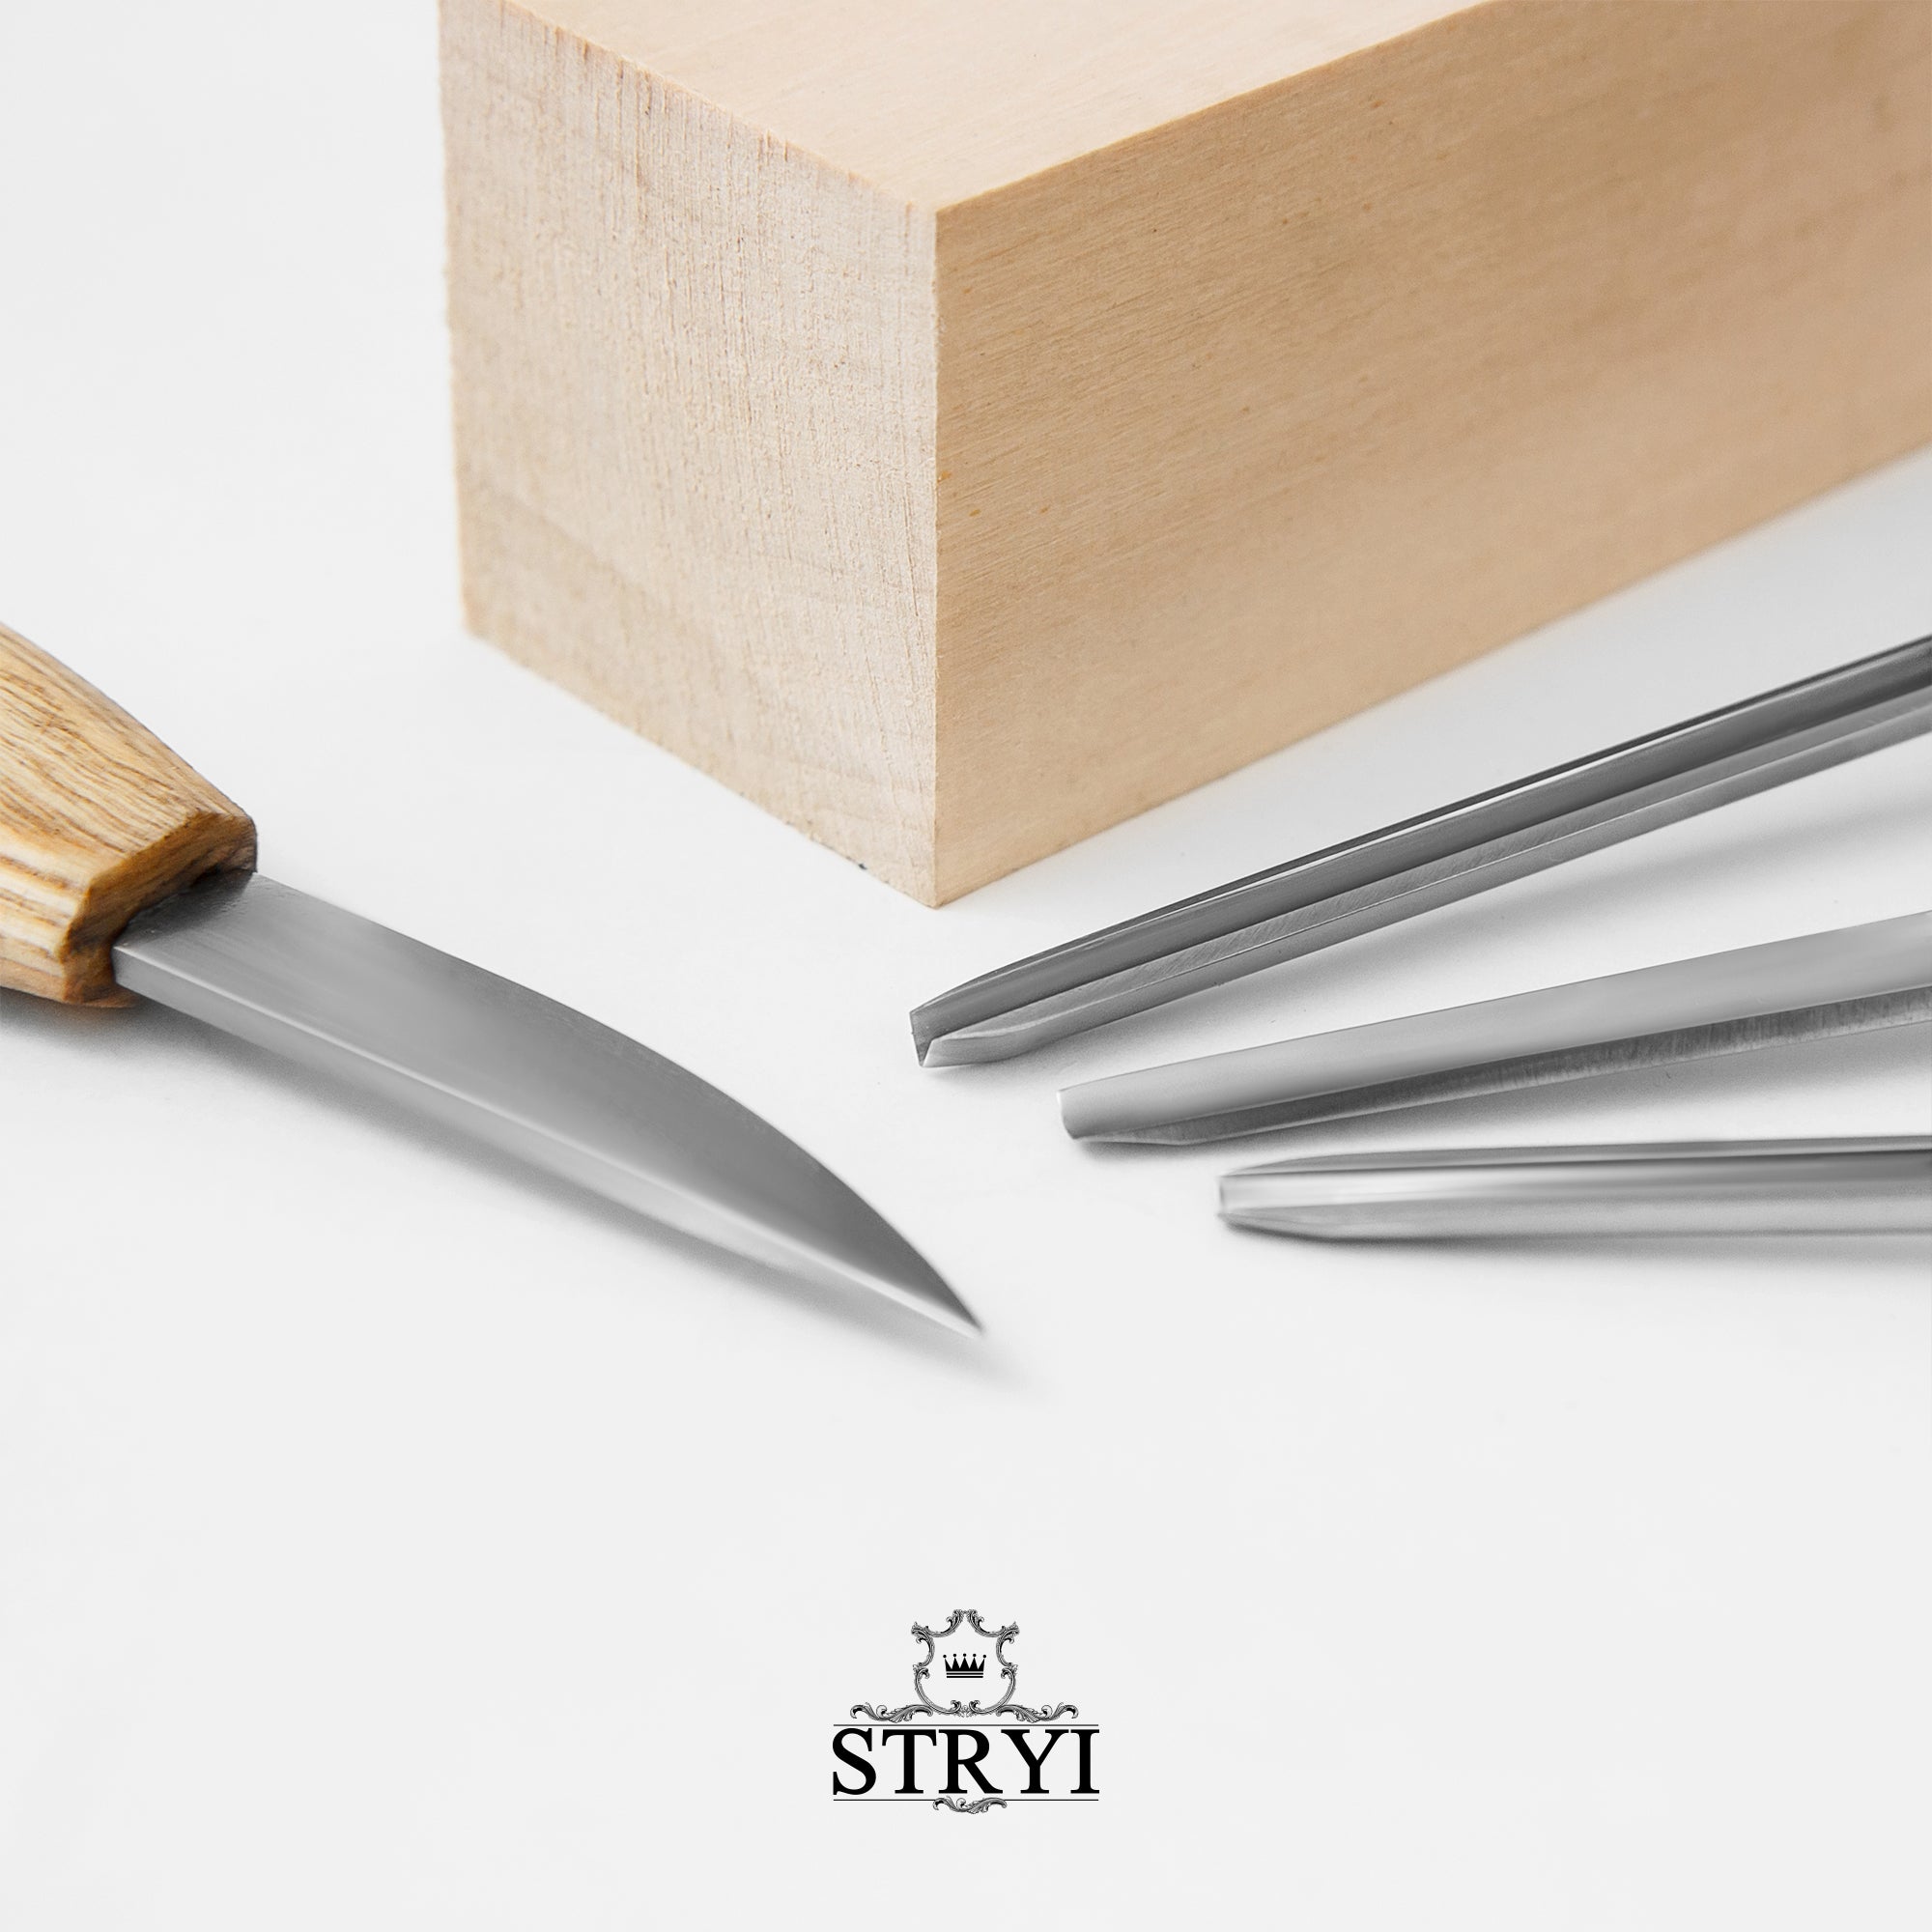 Herramientas para tallar madera para principiantes.